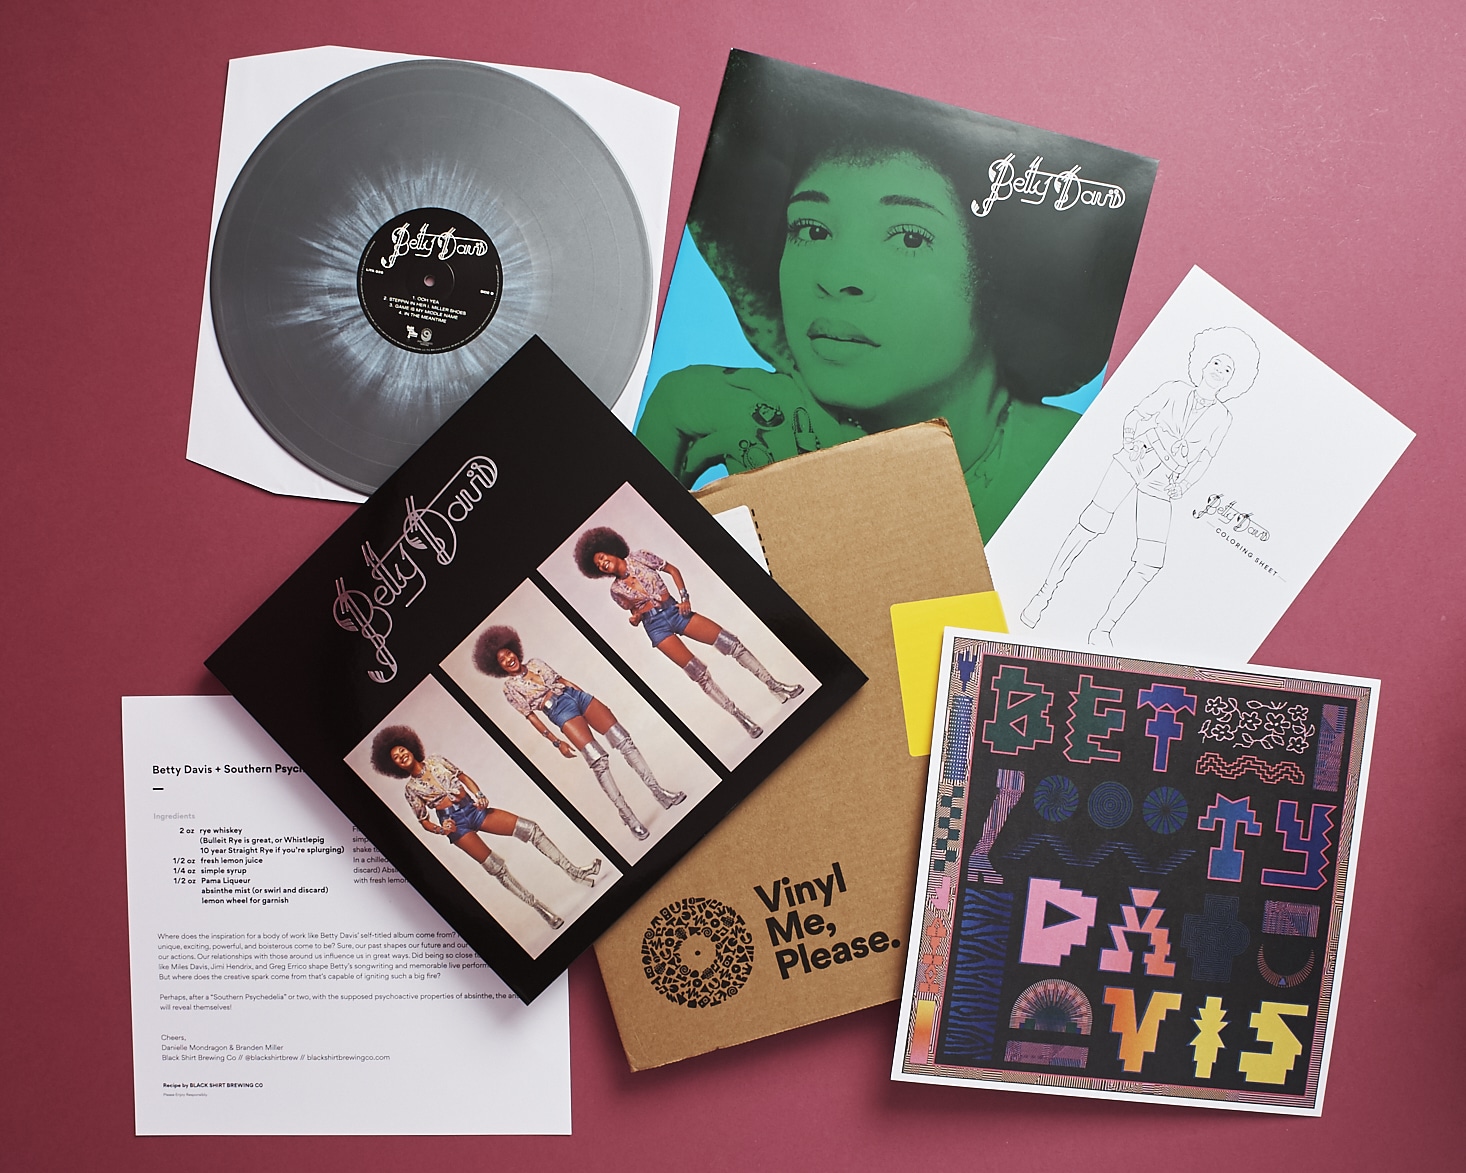 Vinyl Me, Please Subscription Box Review – July 2017